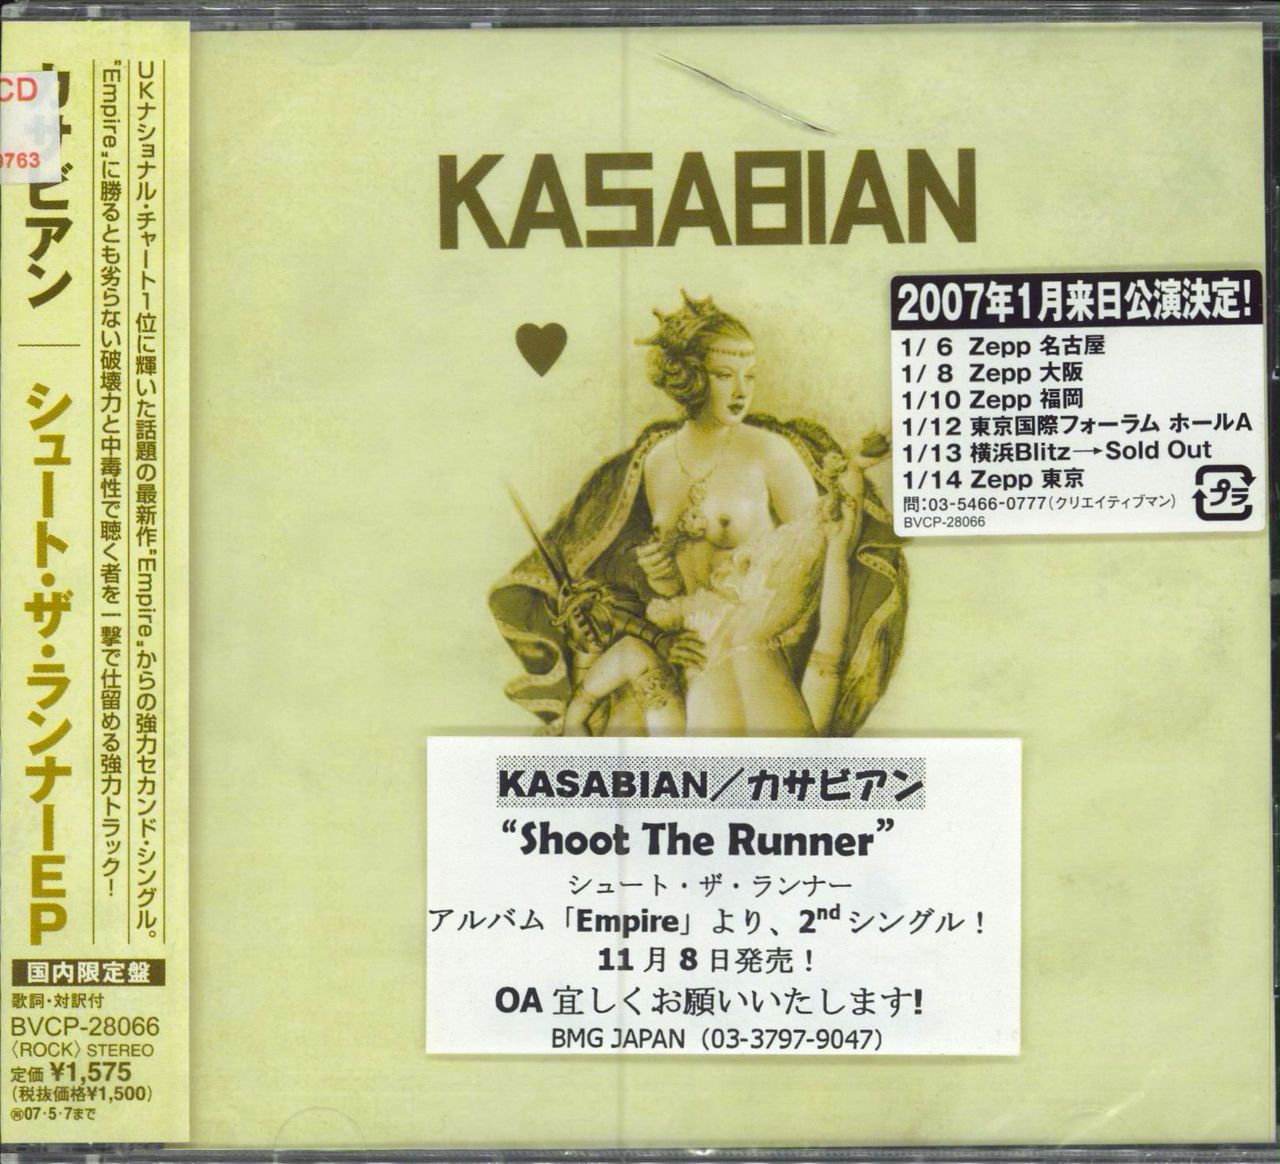 Kasabian Shoot The Runner EP Japanese Promo CD single (CD5 / 5") BVCP-28066